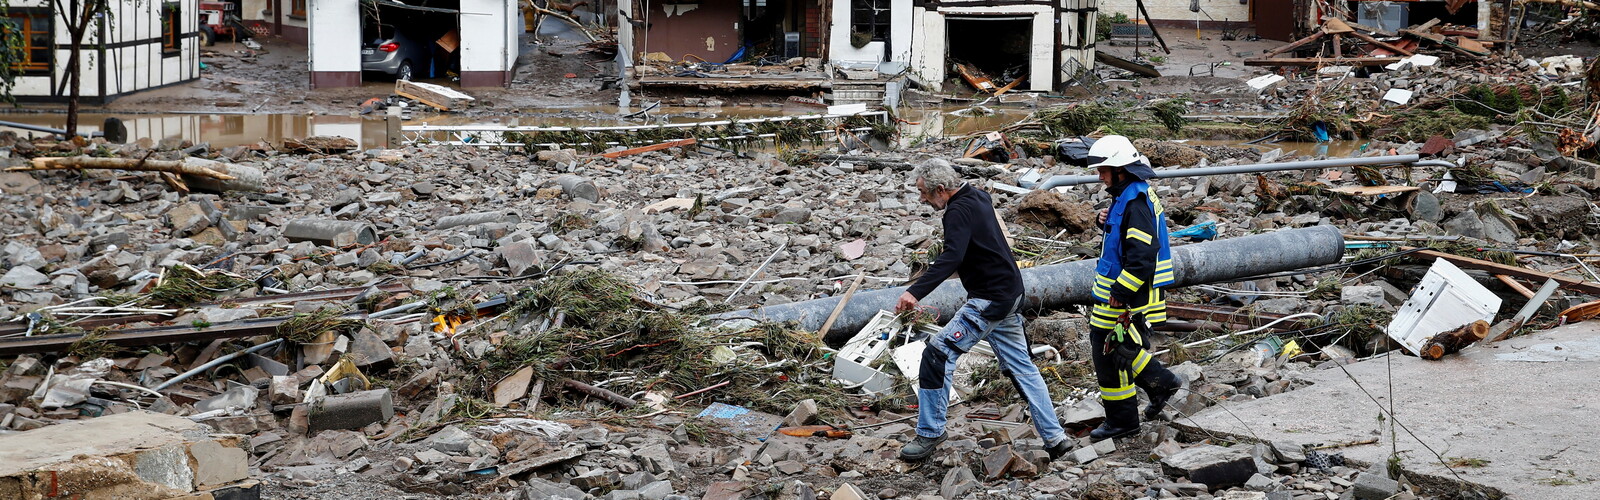 Zwei Männer lauen durch eine Trümmerlandschaft in einem Überflutungsgebiet